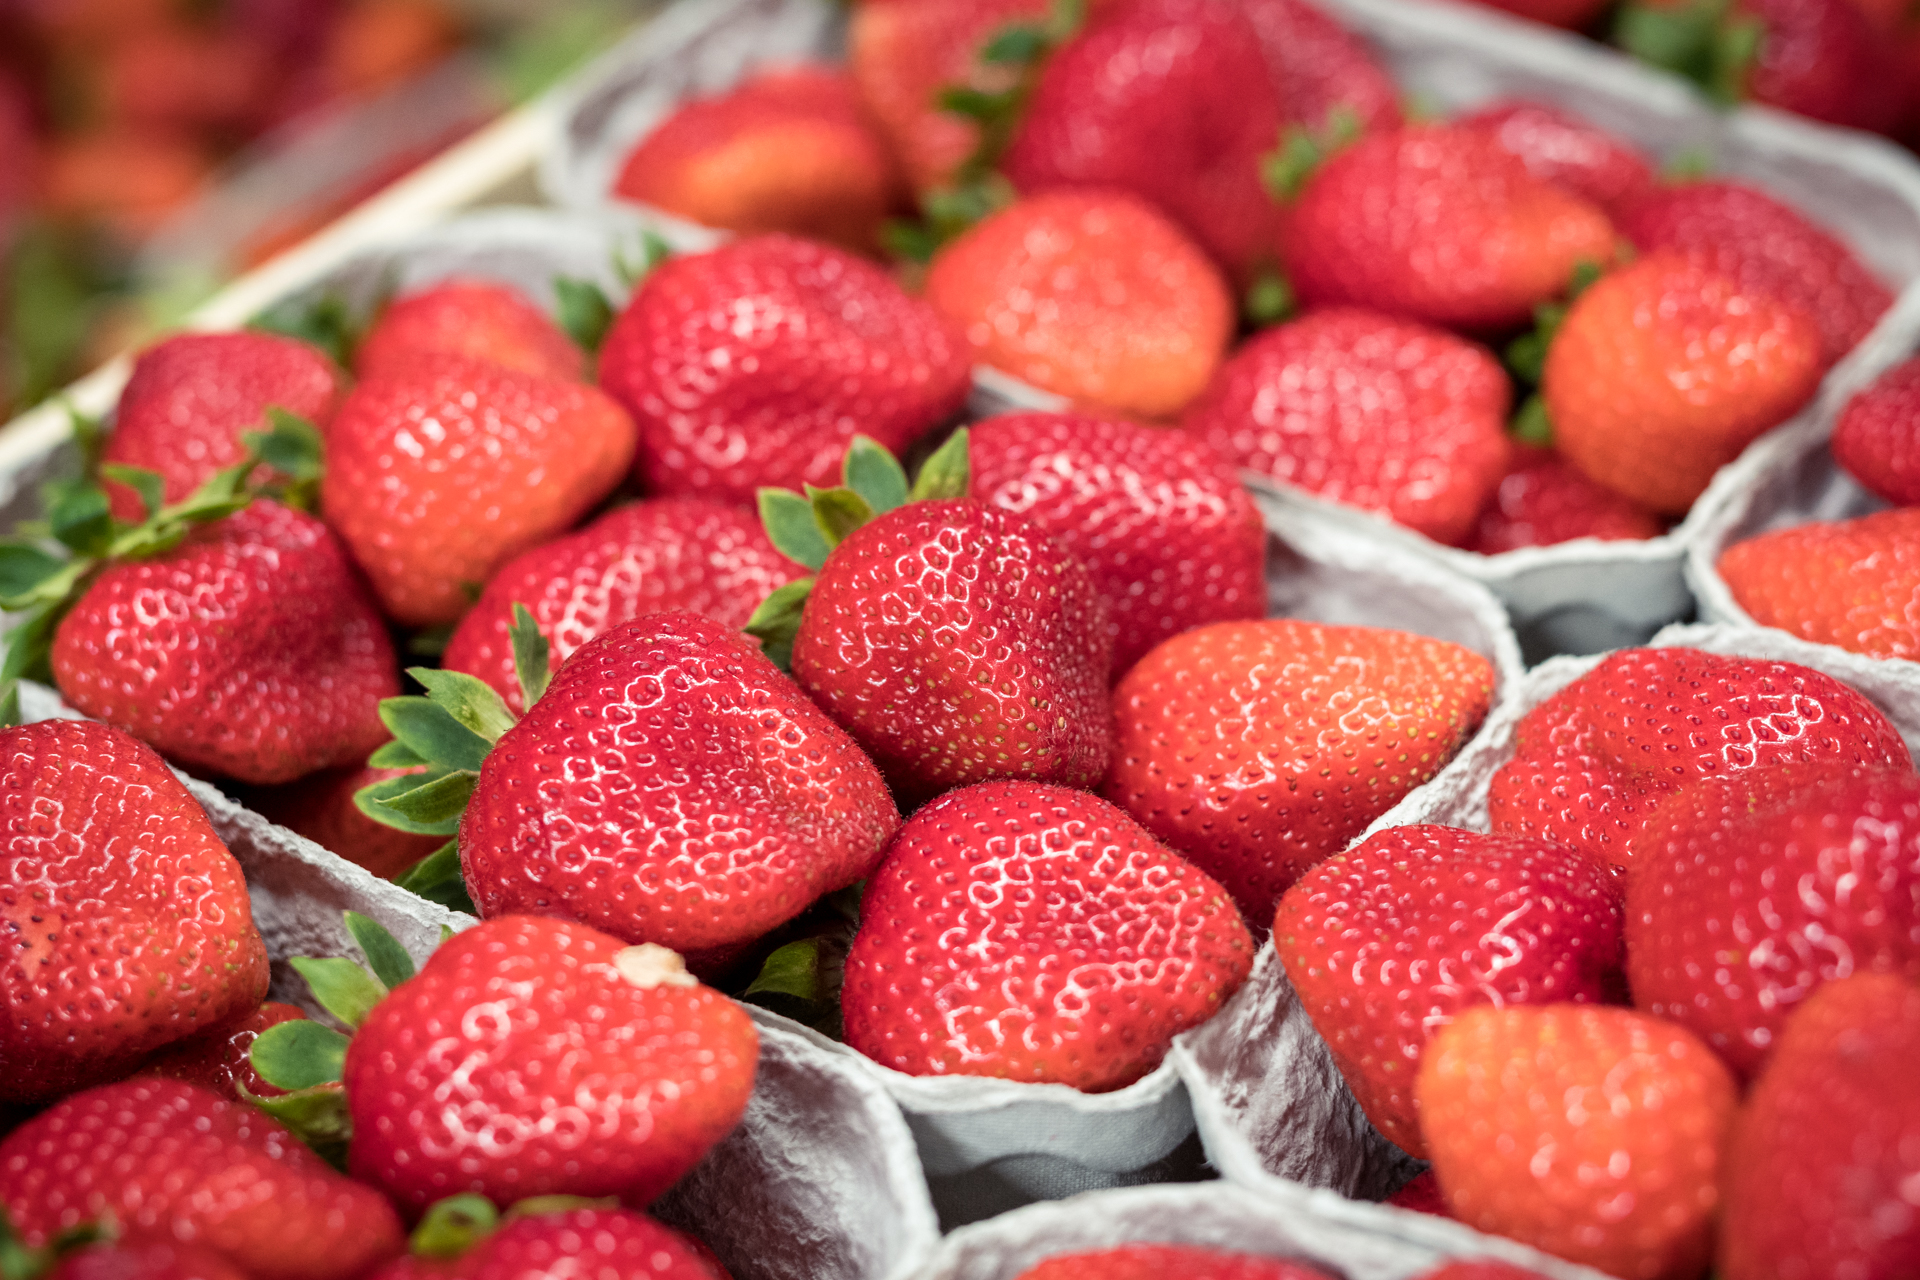 Viele Erdbeerschalen stehen eng beisammen und sind gefüllt mit saftig-roten Erdbeeren